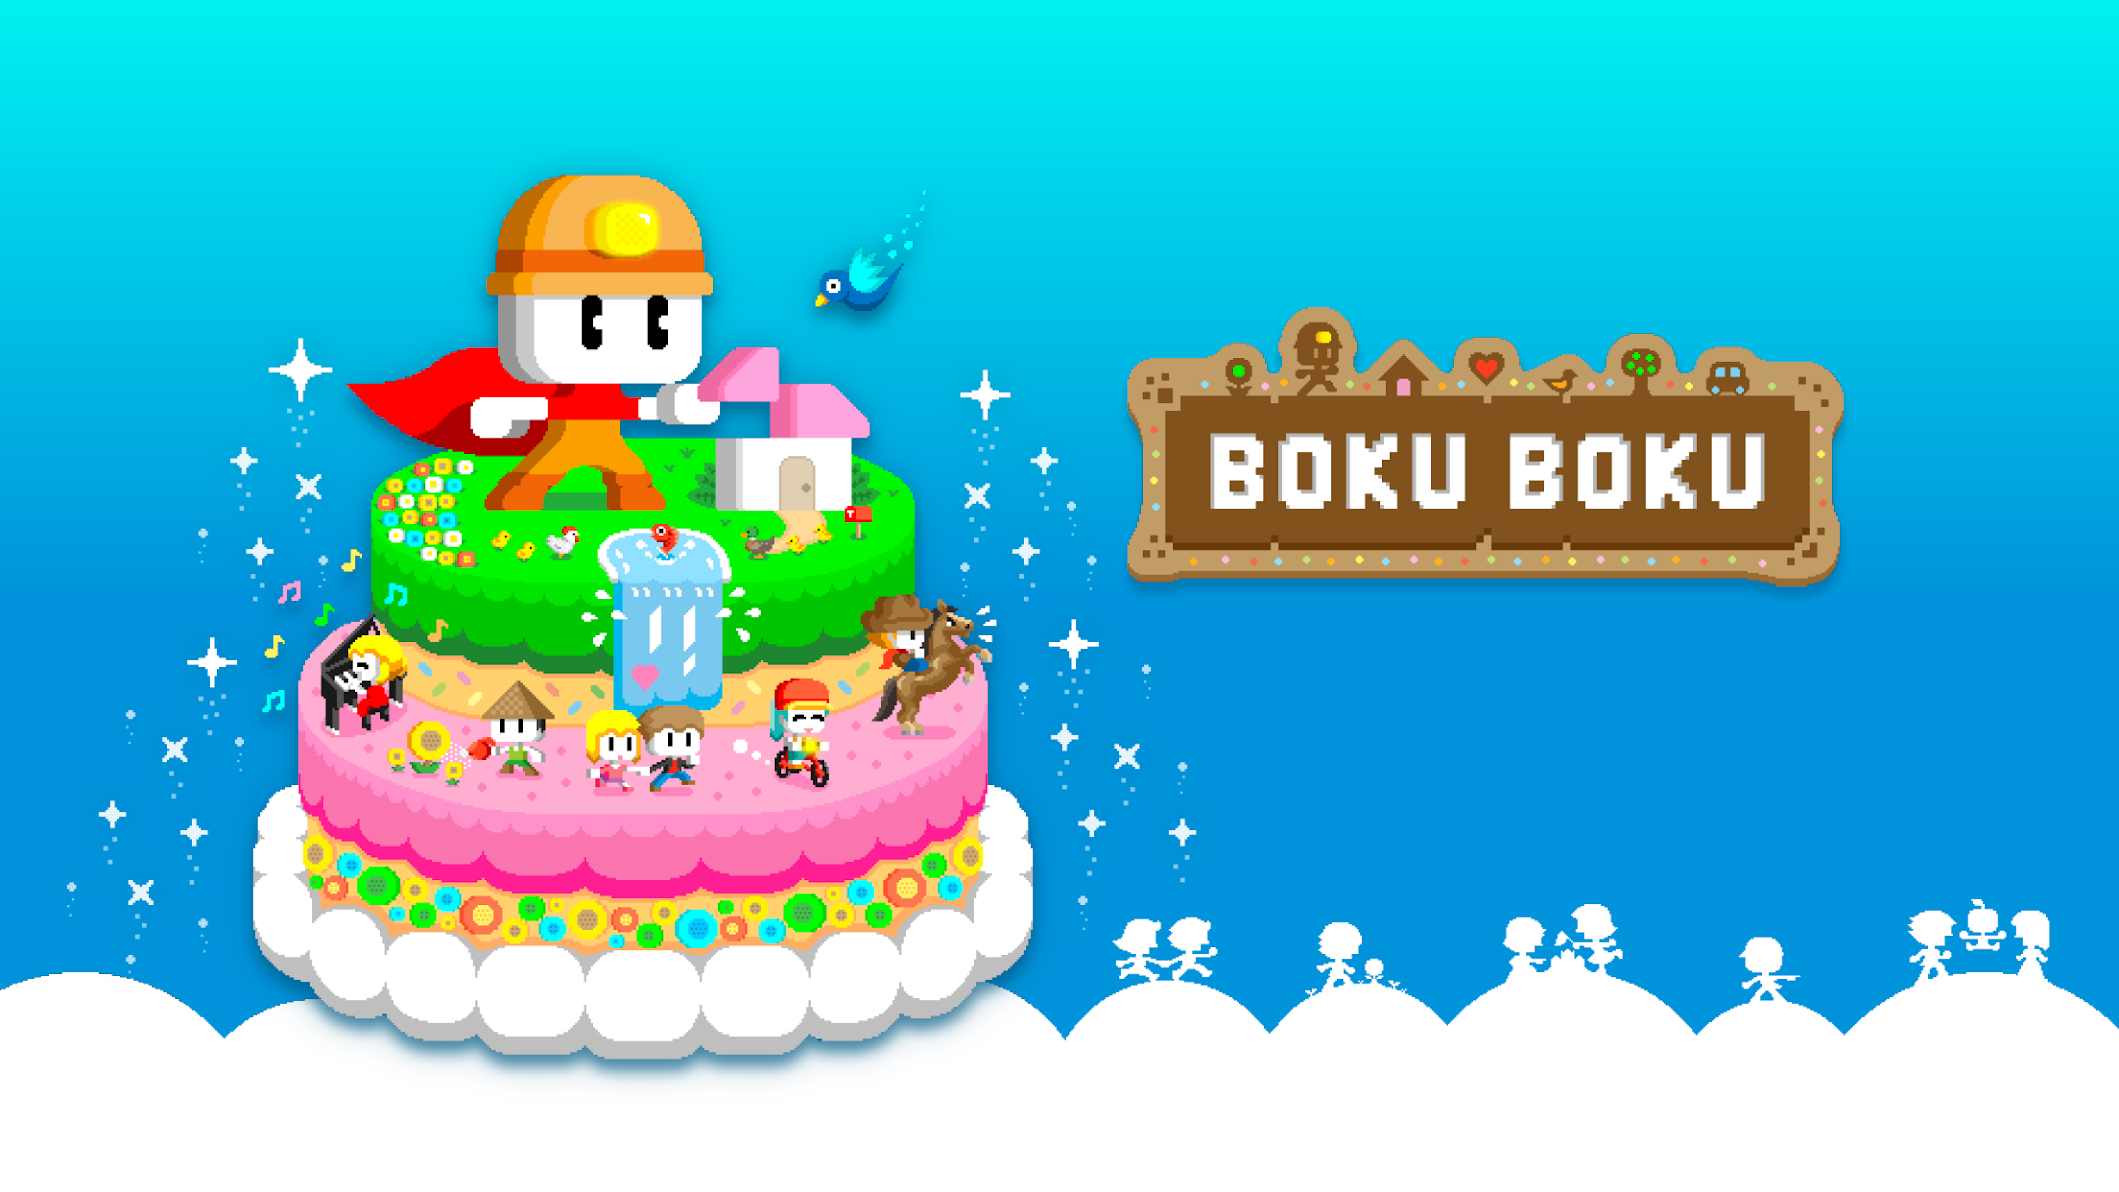 دانلود BOKU BOKU 1.0.229 – بازی شبیه سازی بوکو بوکو اندروید